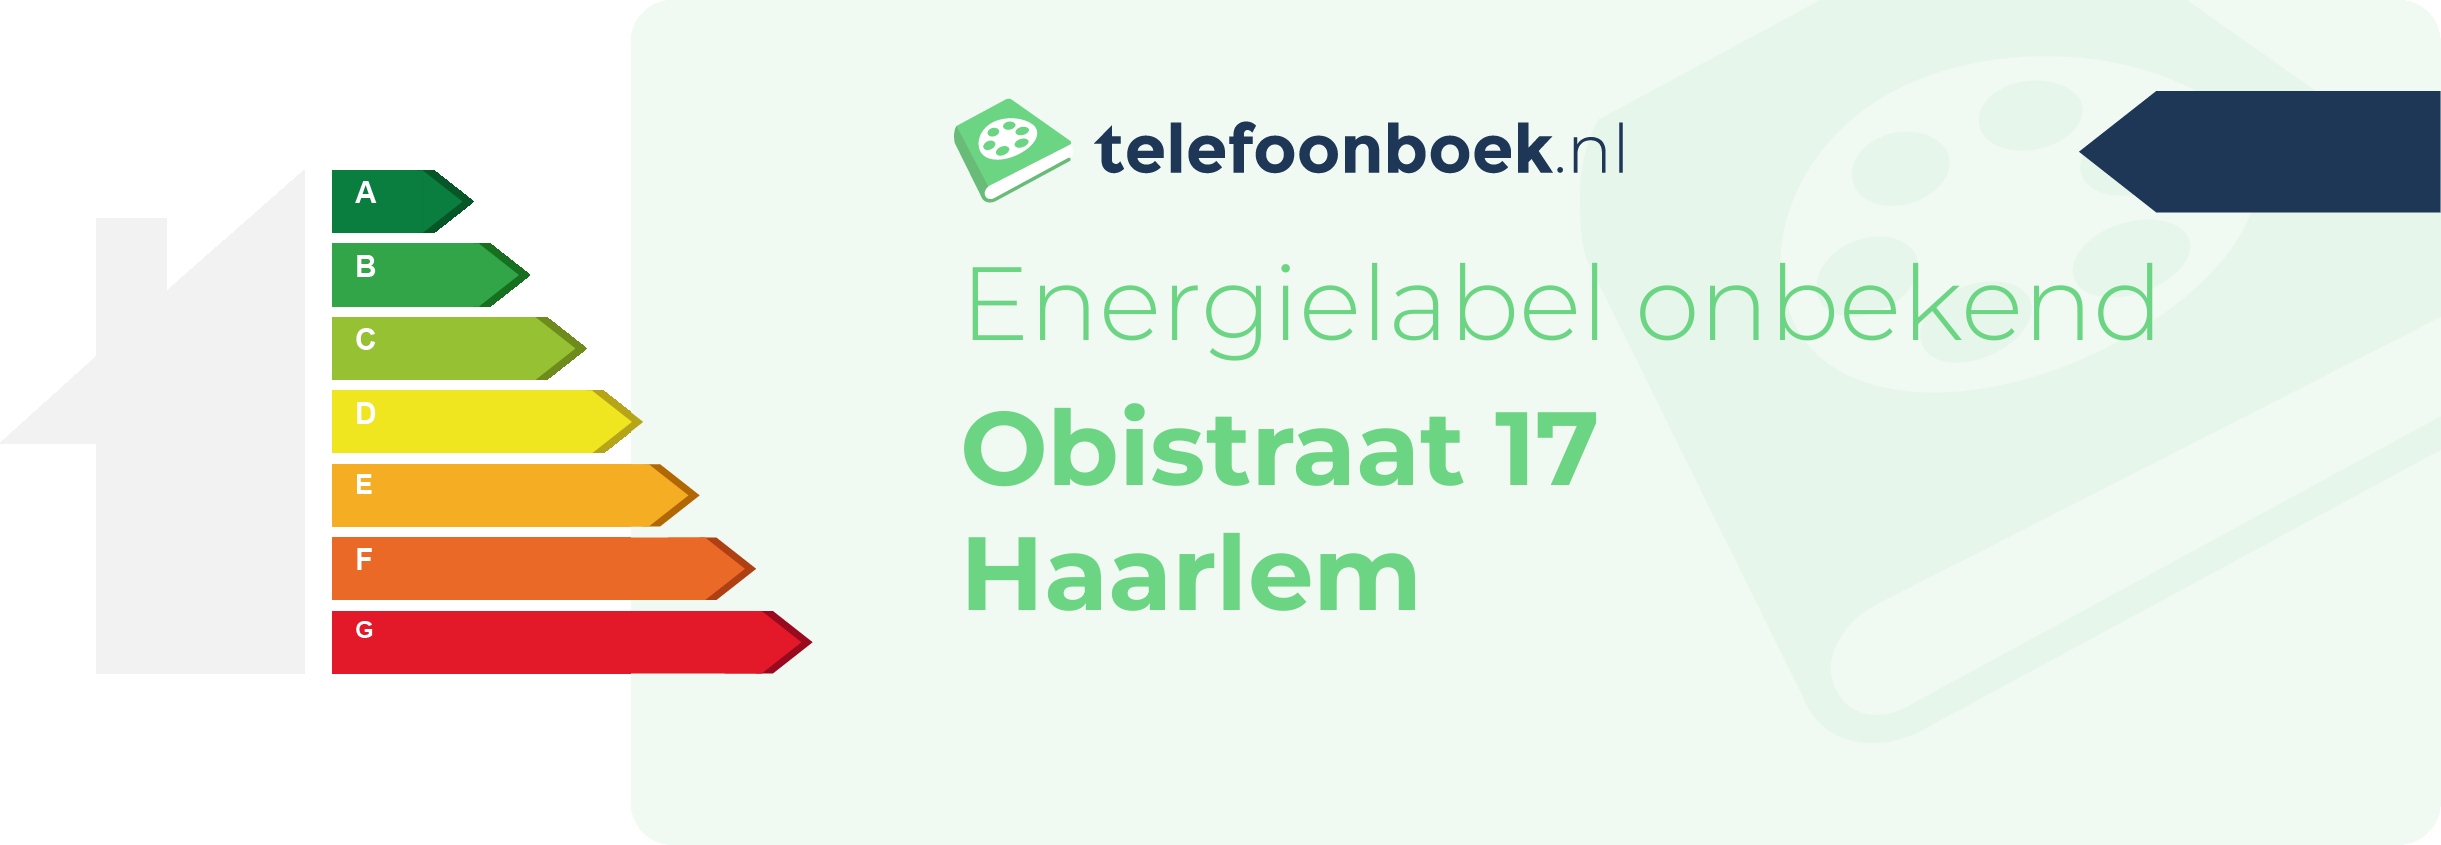 Energielabel Obistraat 17 Haarlem